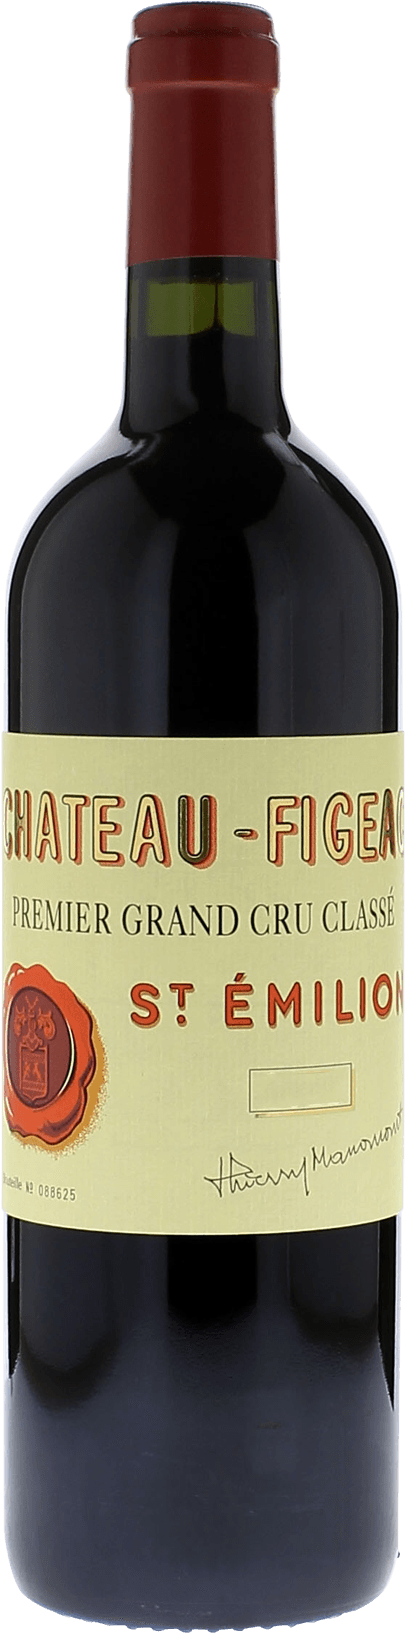 Figeac 1990 1er Grand cru class Saint-Emilion, Bordeaux rouge